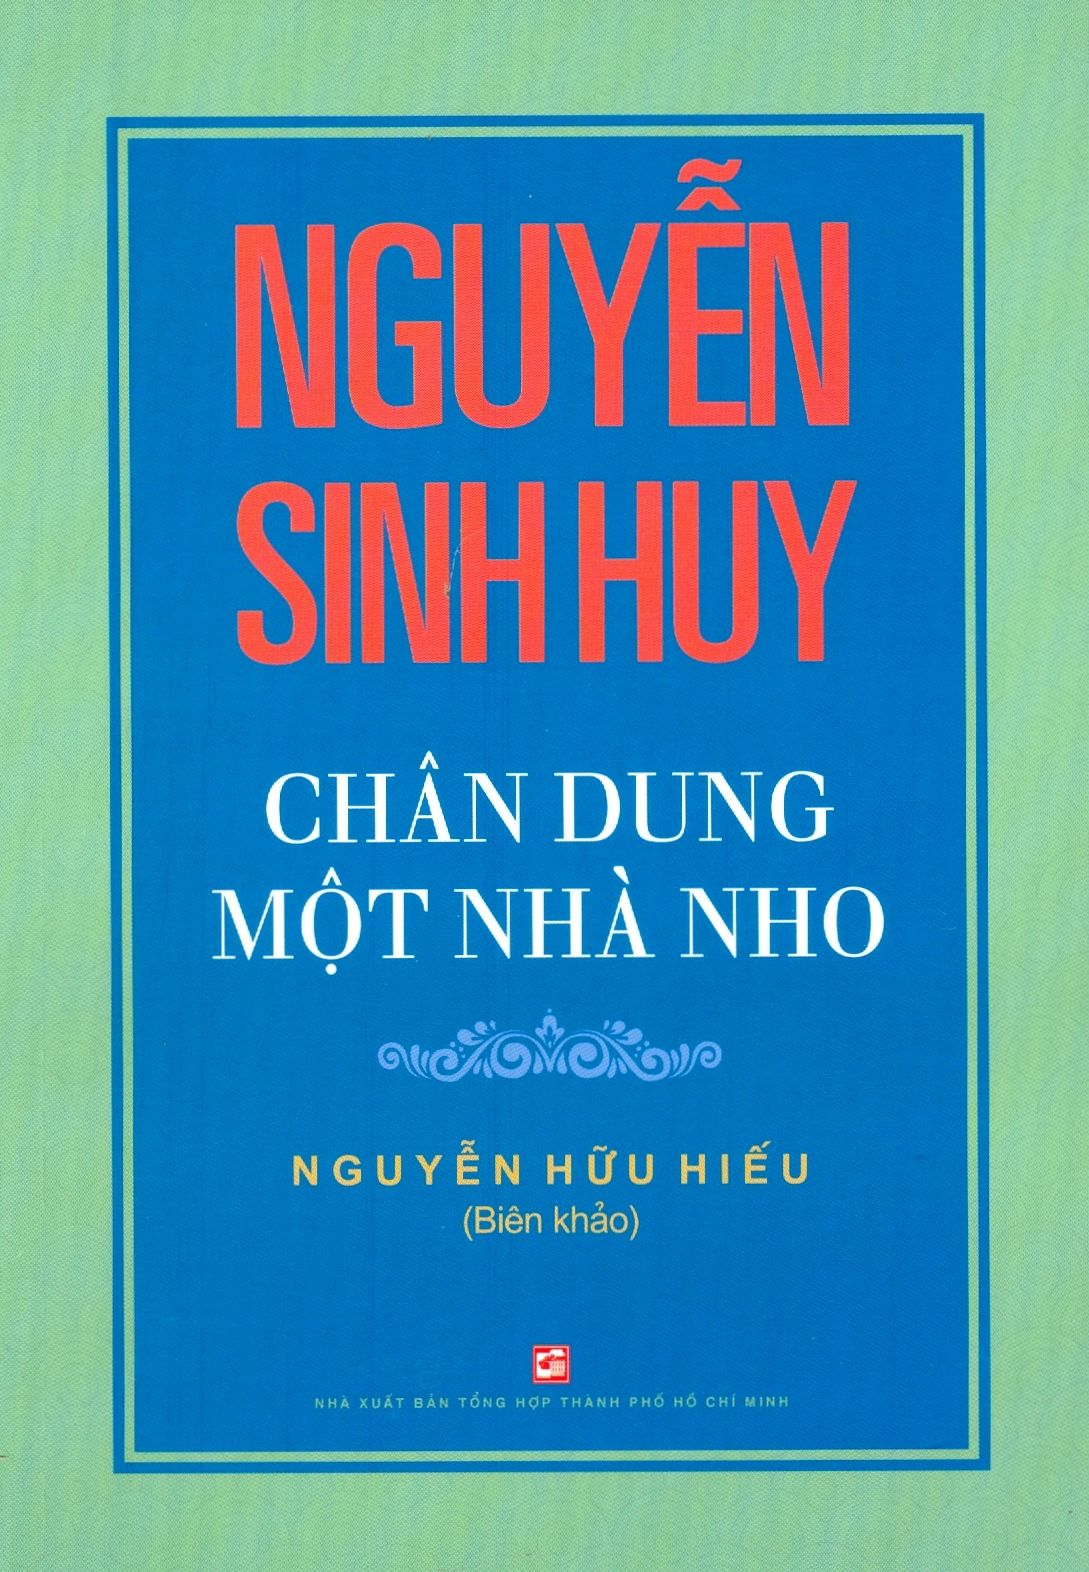  Nguyễn Sinh Huy - Chân Dung Một Nhà Nho 